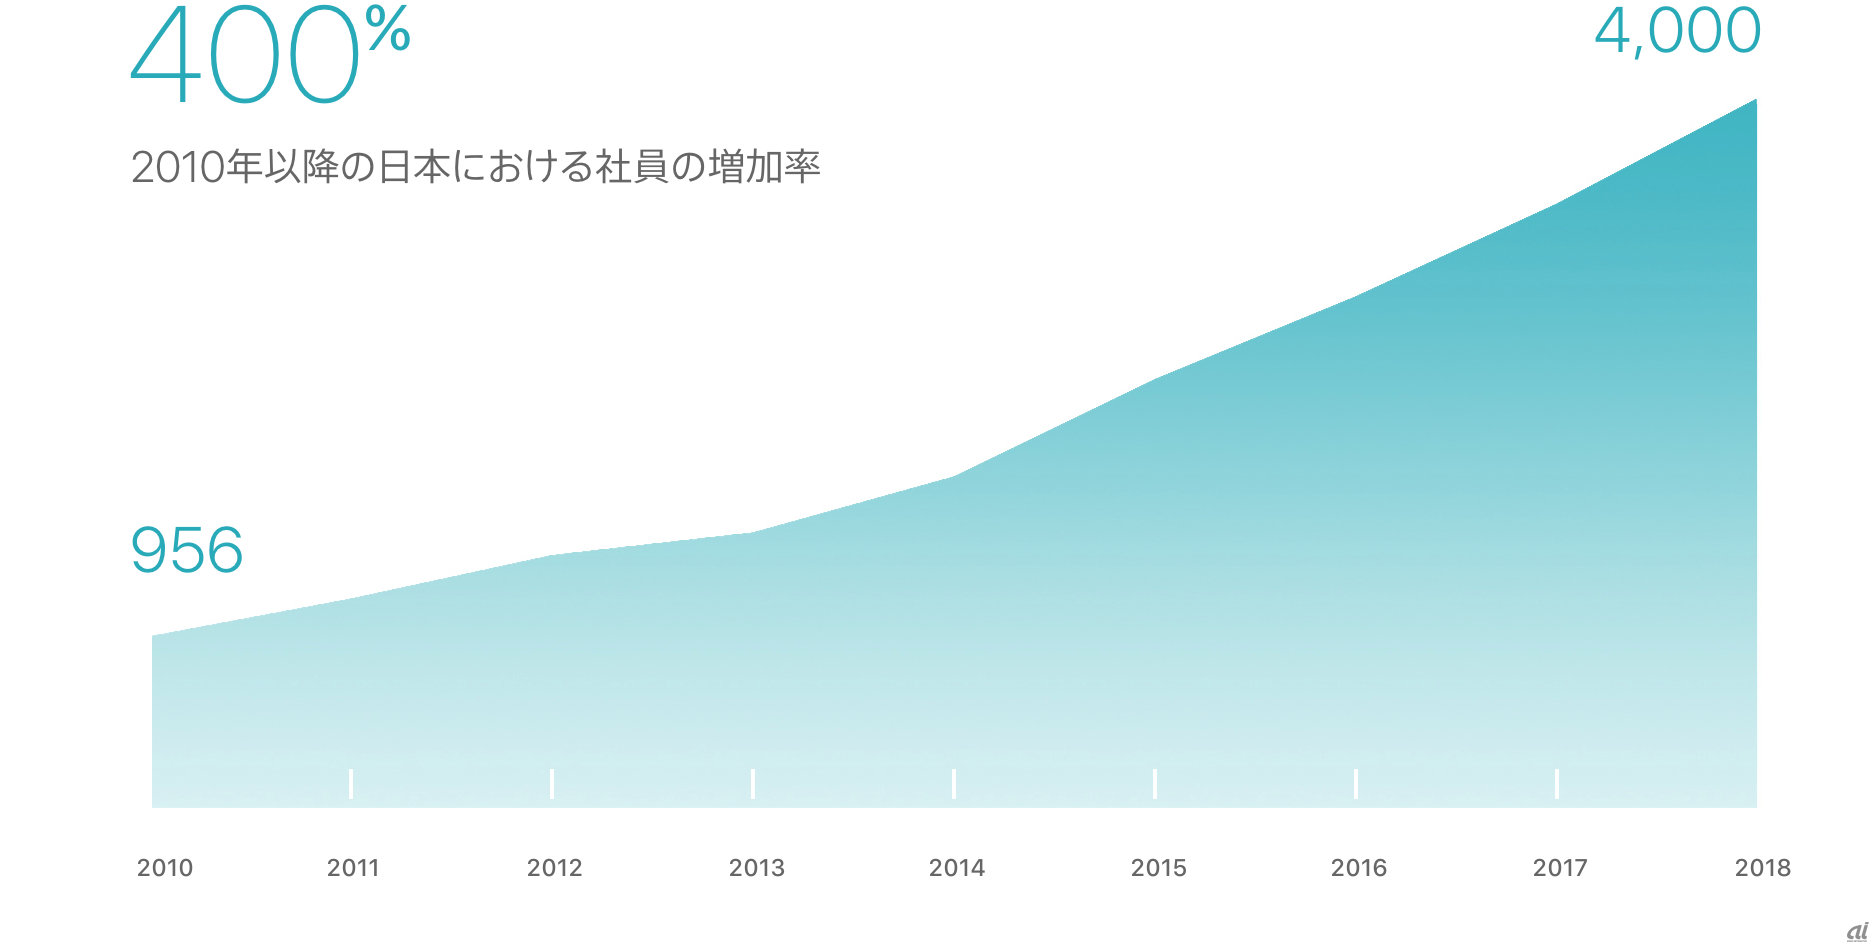 日本におけるアップル社員数の推移